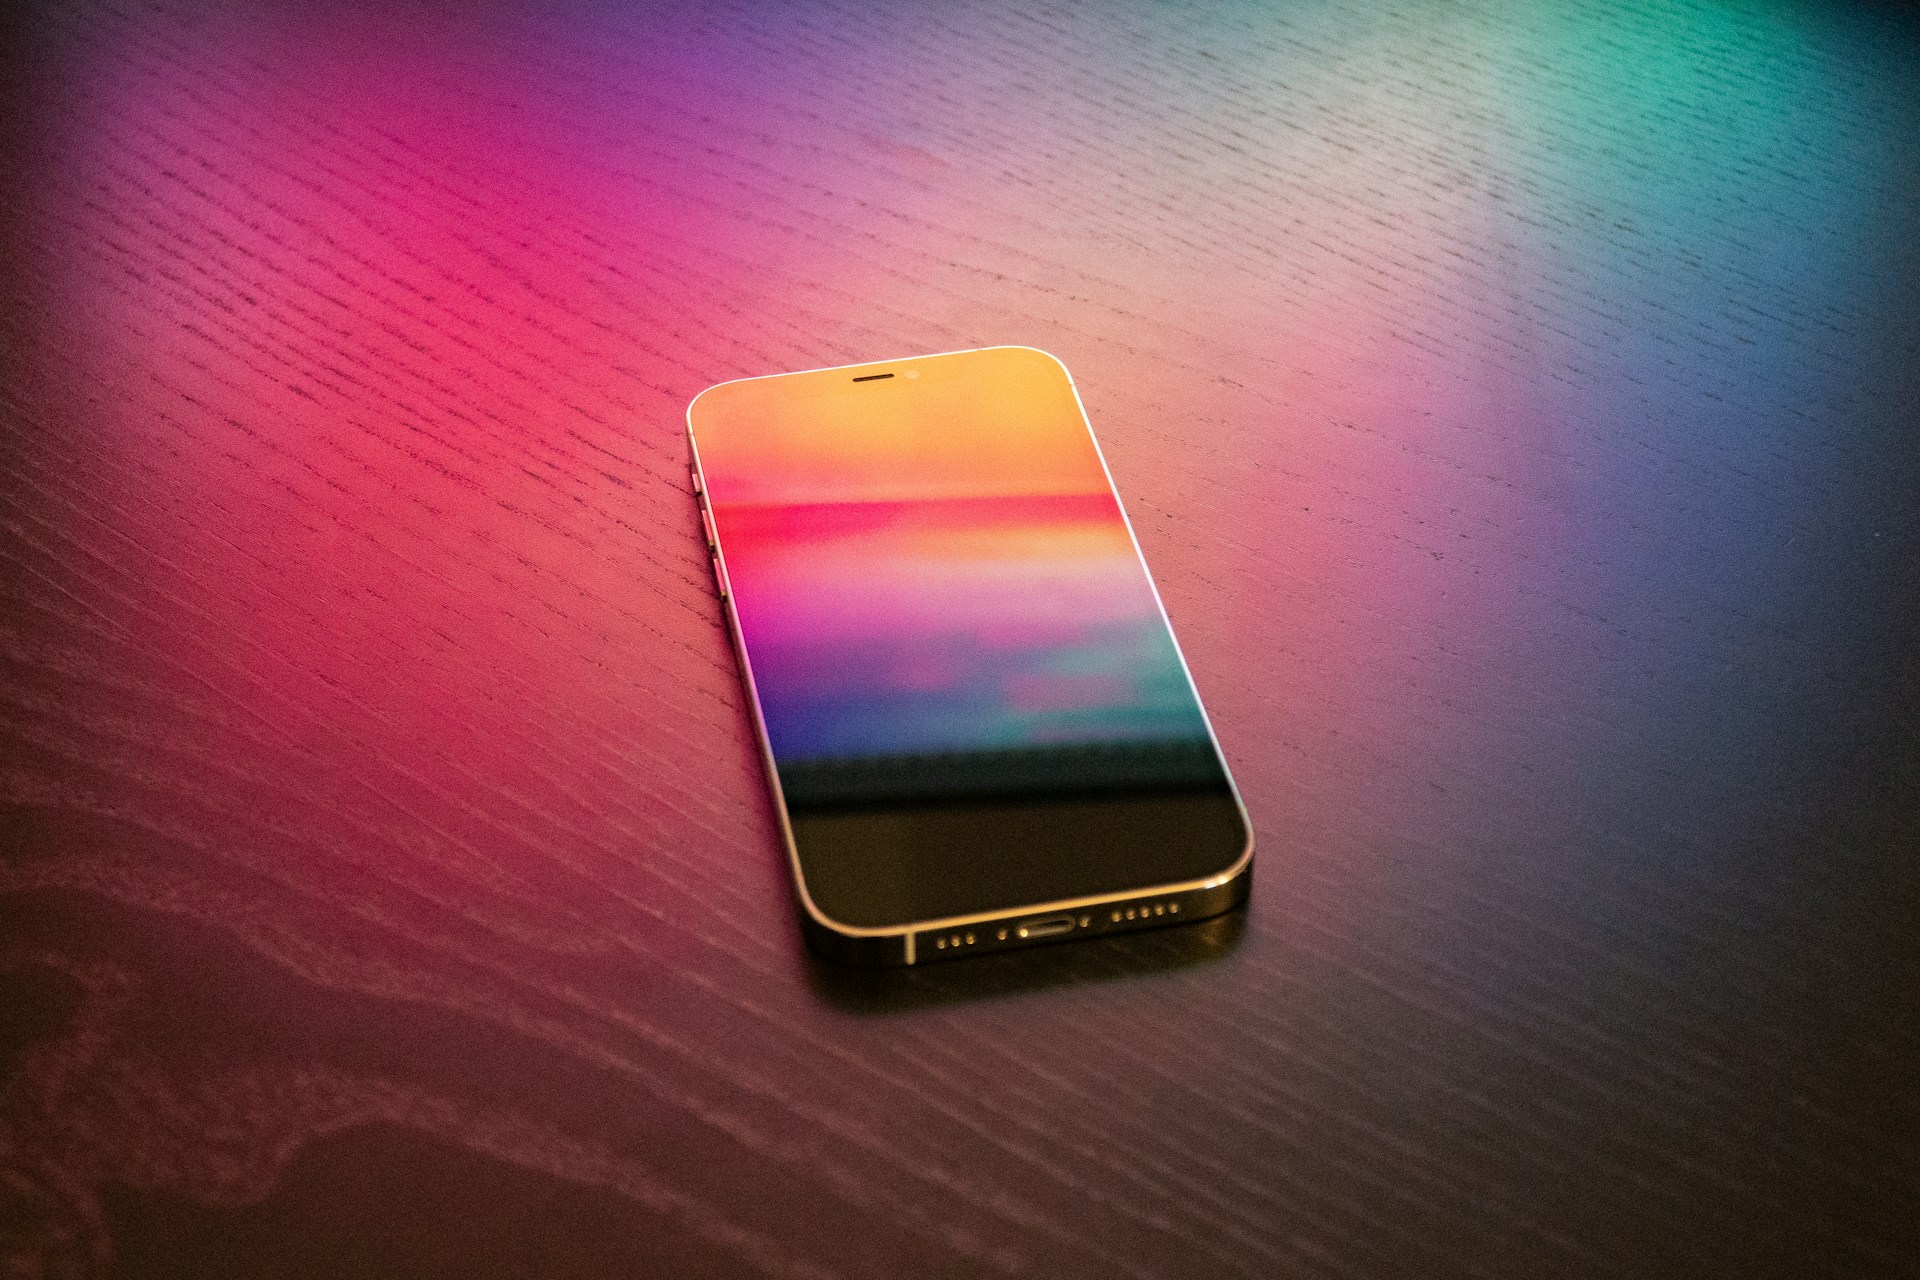 Encontre soluções eficazes para corrigir as linhas verticais coloridas na tela do seu iPhone de forma rápida e fácil.